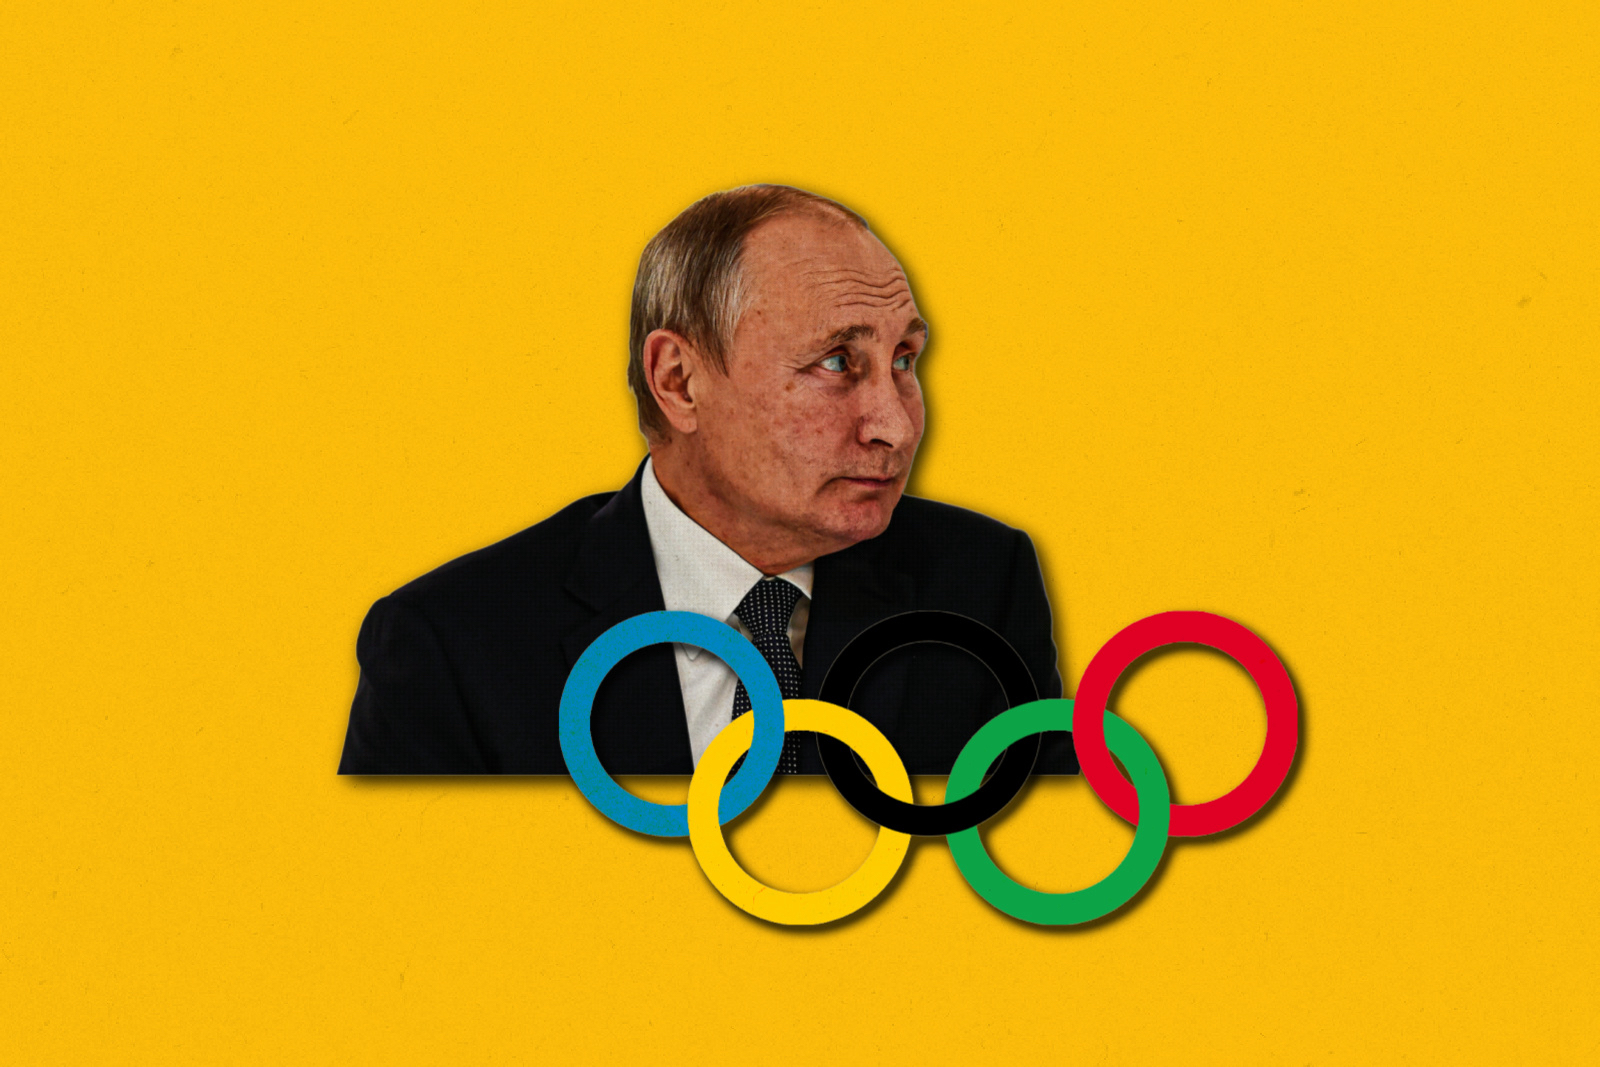 Vladimir Putin Olympics